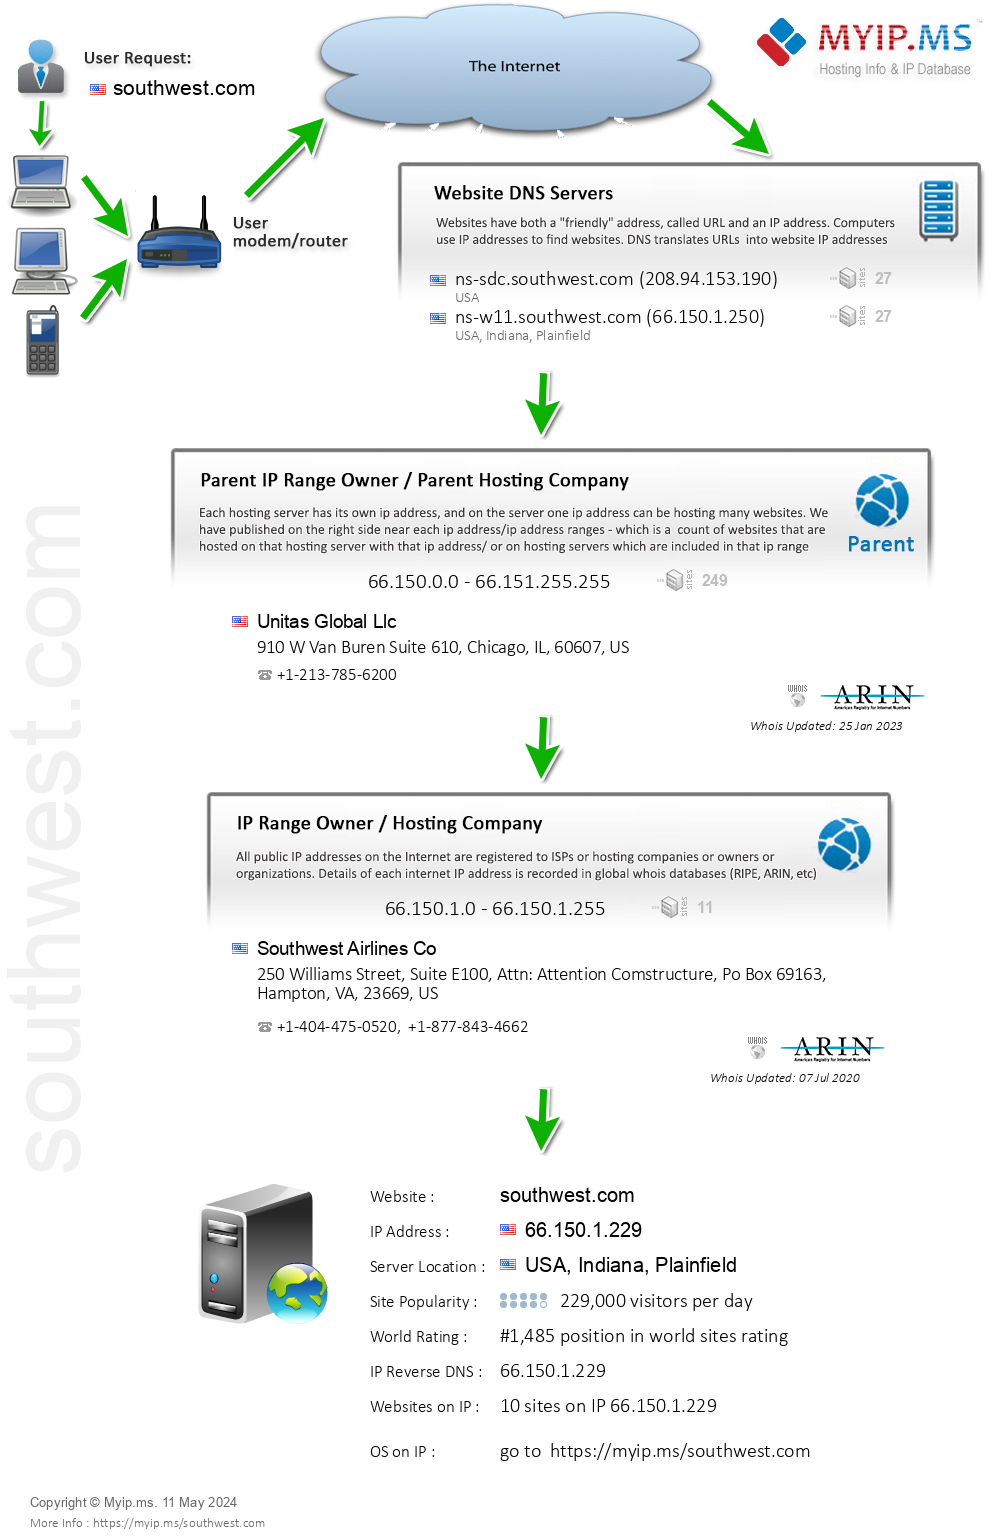 Southwest.com - Website Hosting Visual IP Diagram